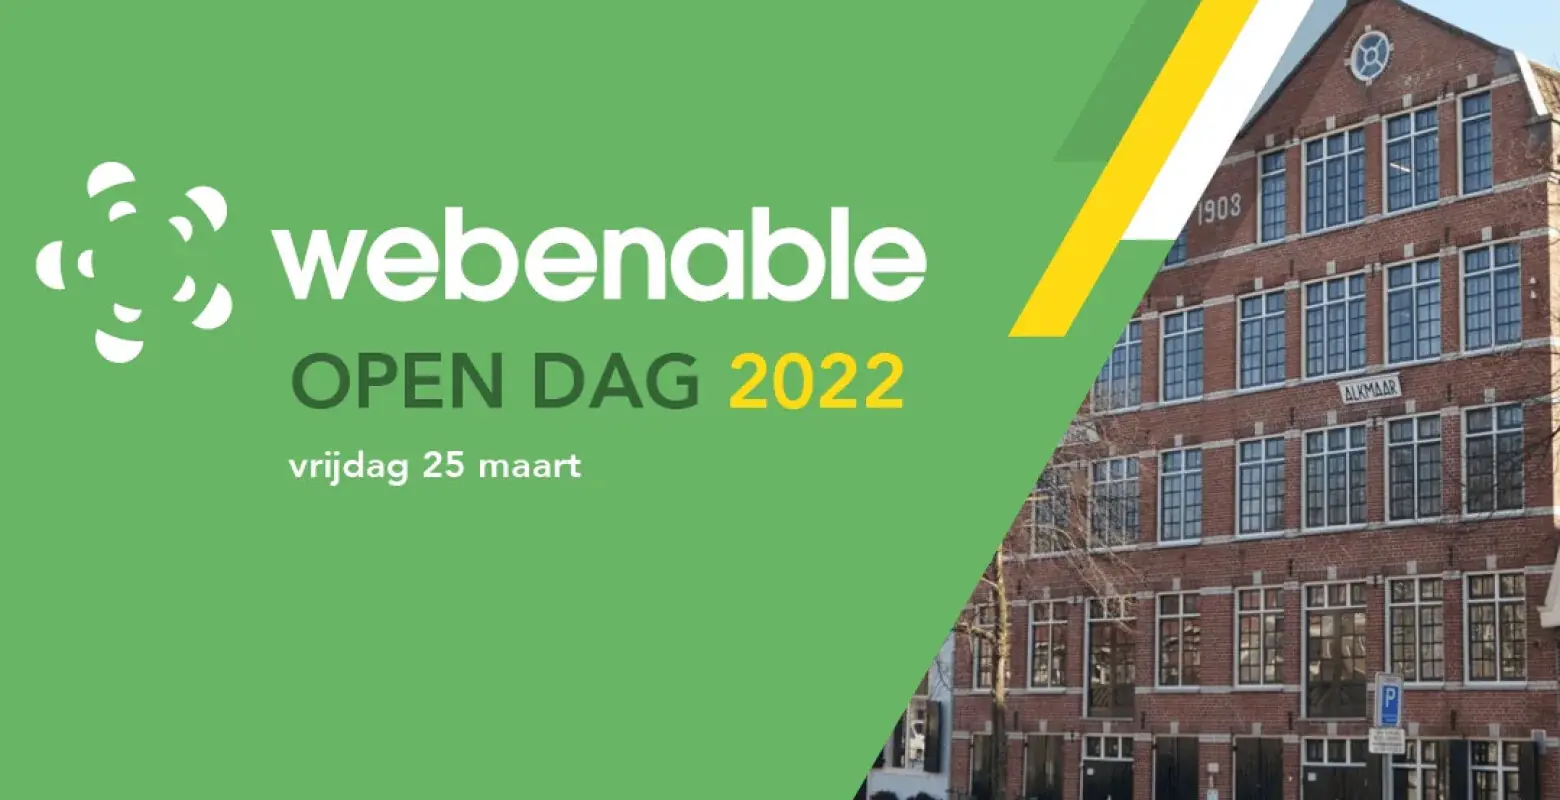 Webenable open dag 2022